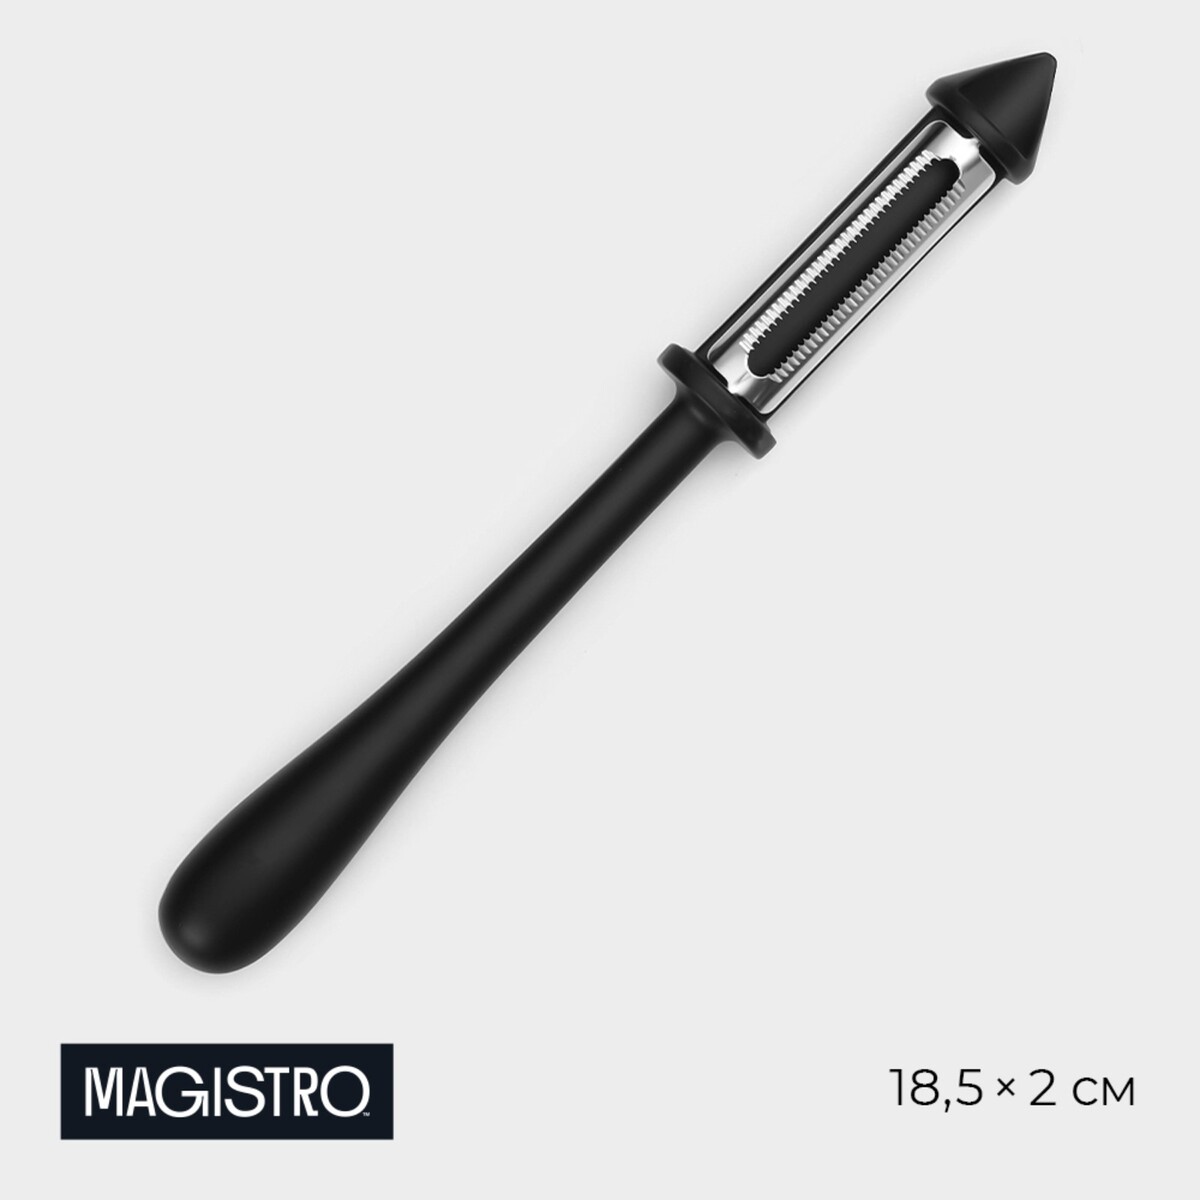 Овощечистка magistro vantablack, 18,5×2 см, многофункциональная, цвет черный овощечистка magistro vantablack 17×6 6 см горизонтальная